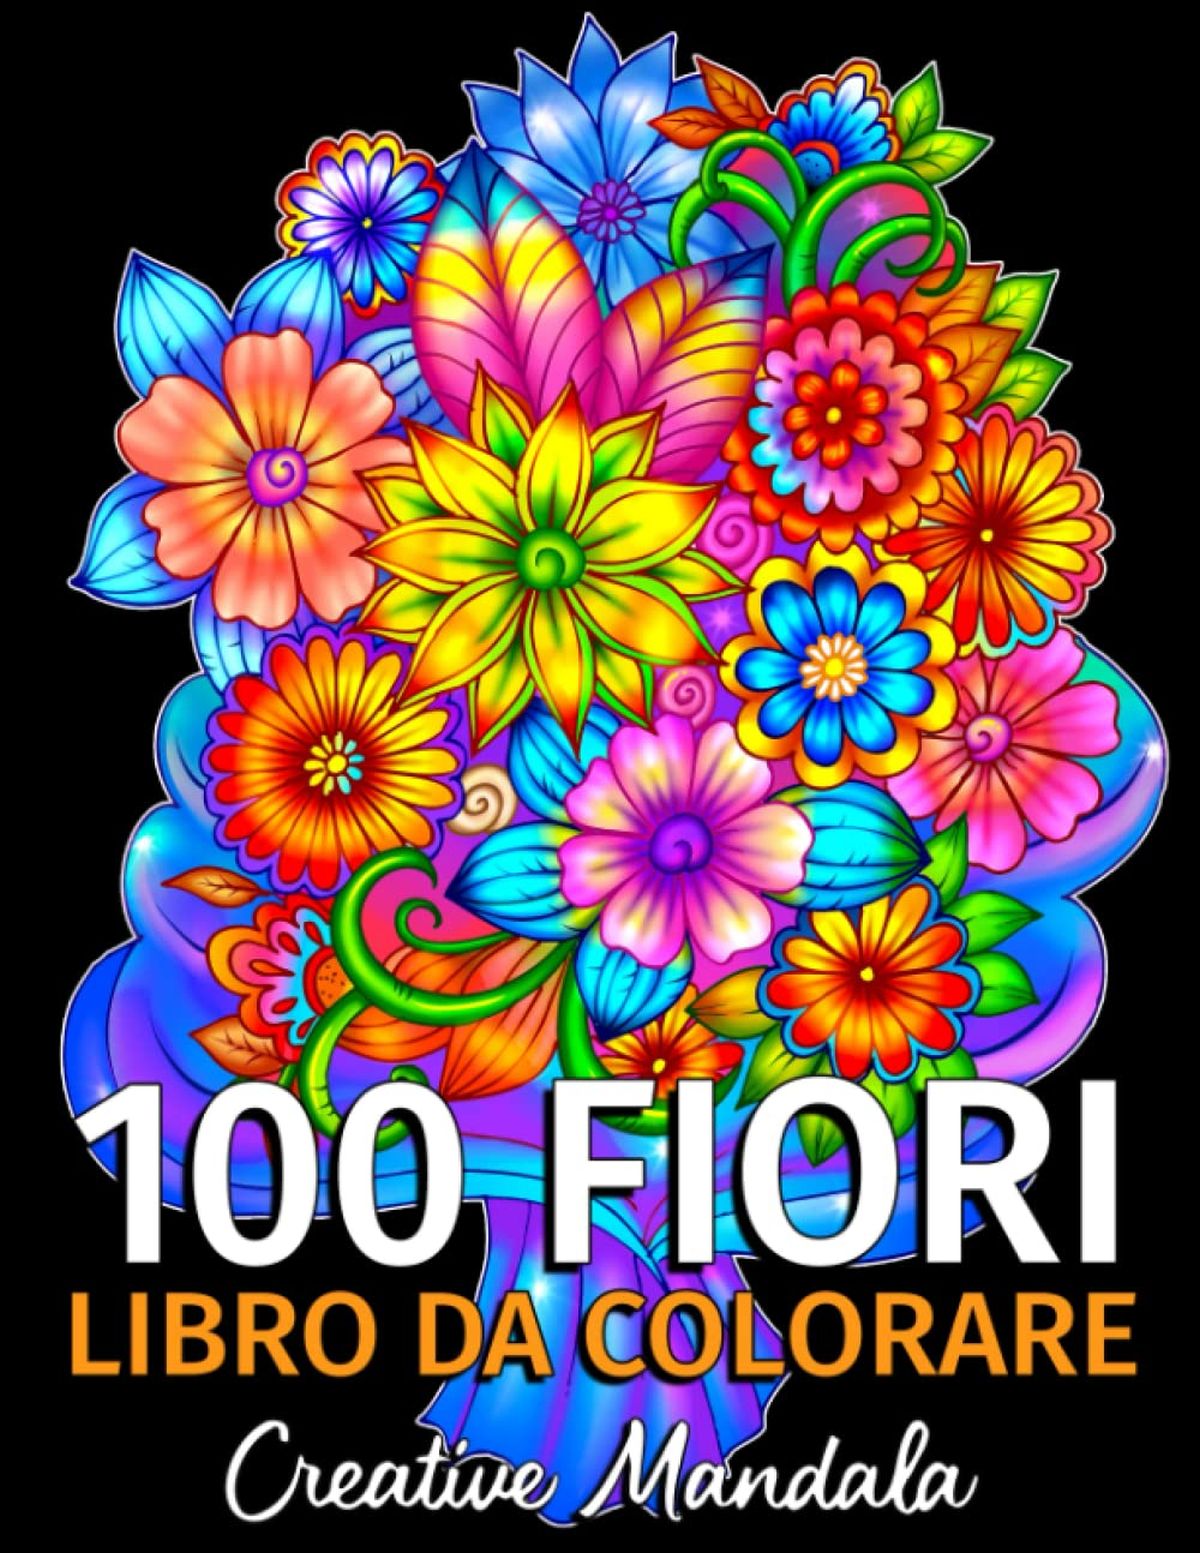 100 fiori, libro da colorare per adulti